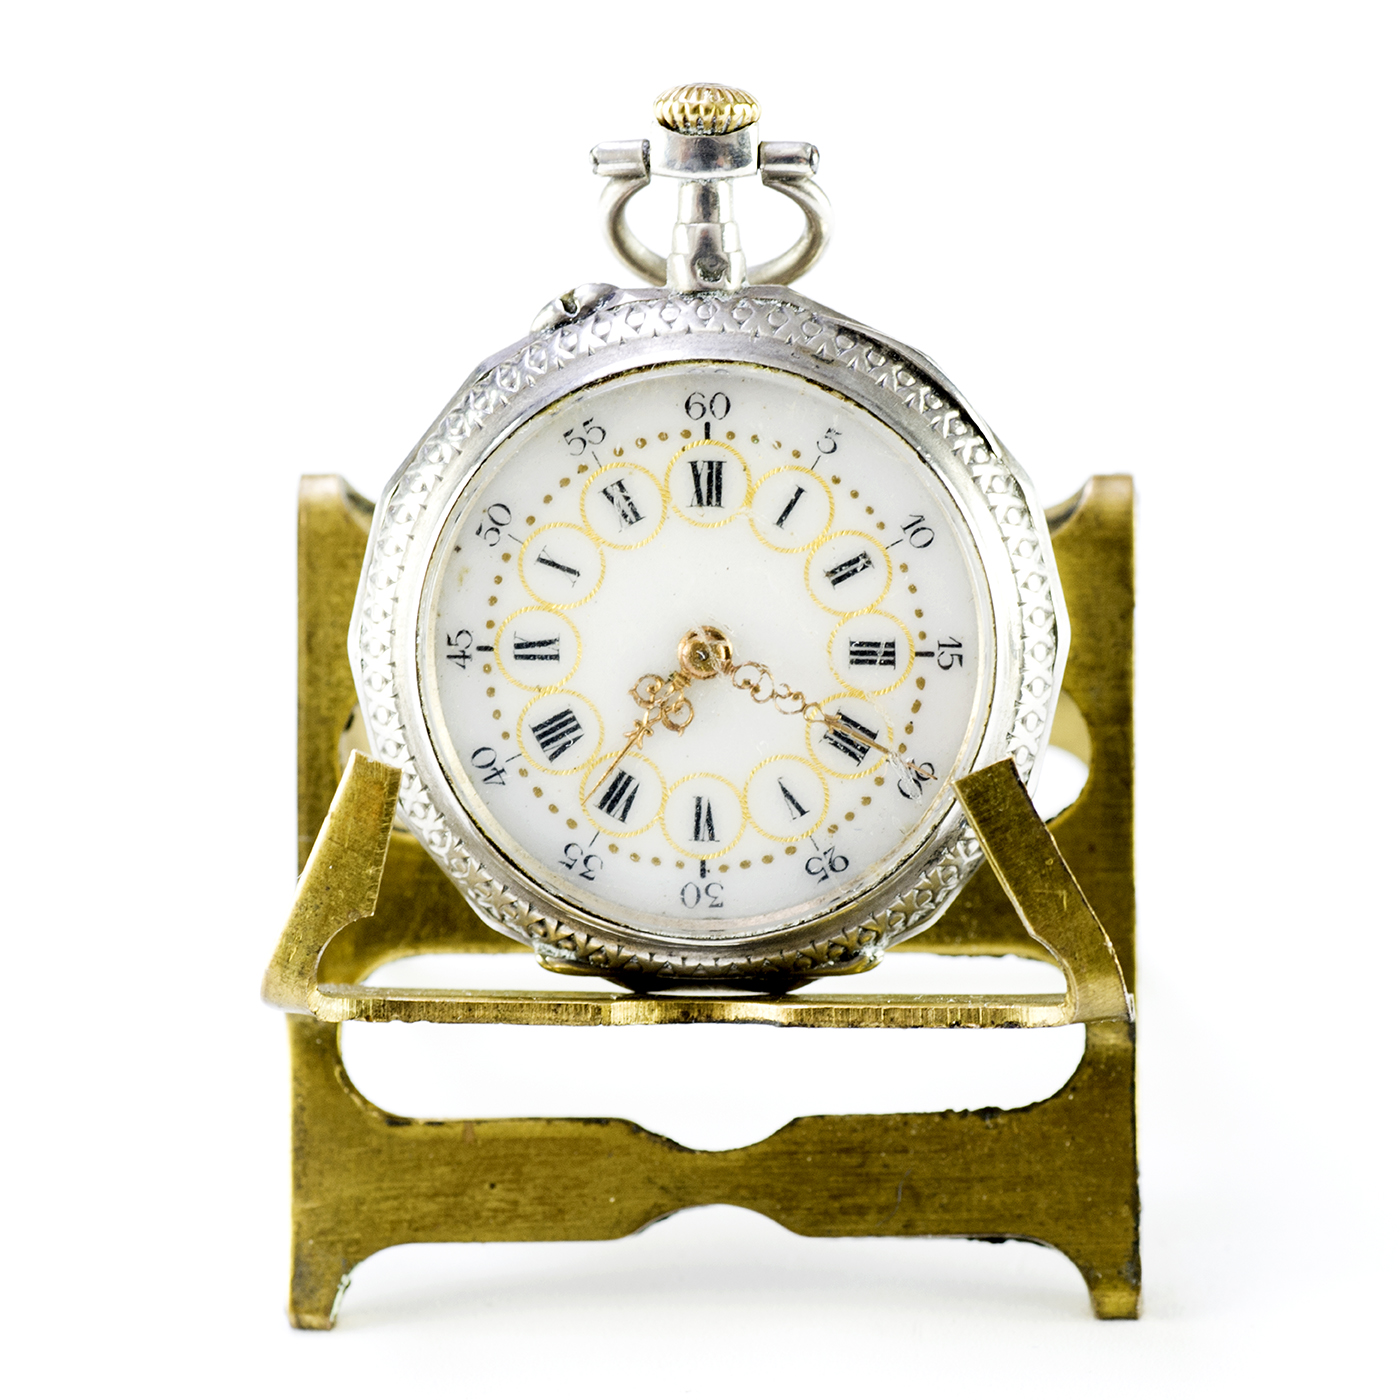 Reloj de colgar, lepine y remontoir. Suiza, ca. 1890